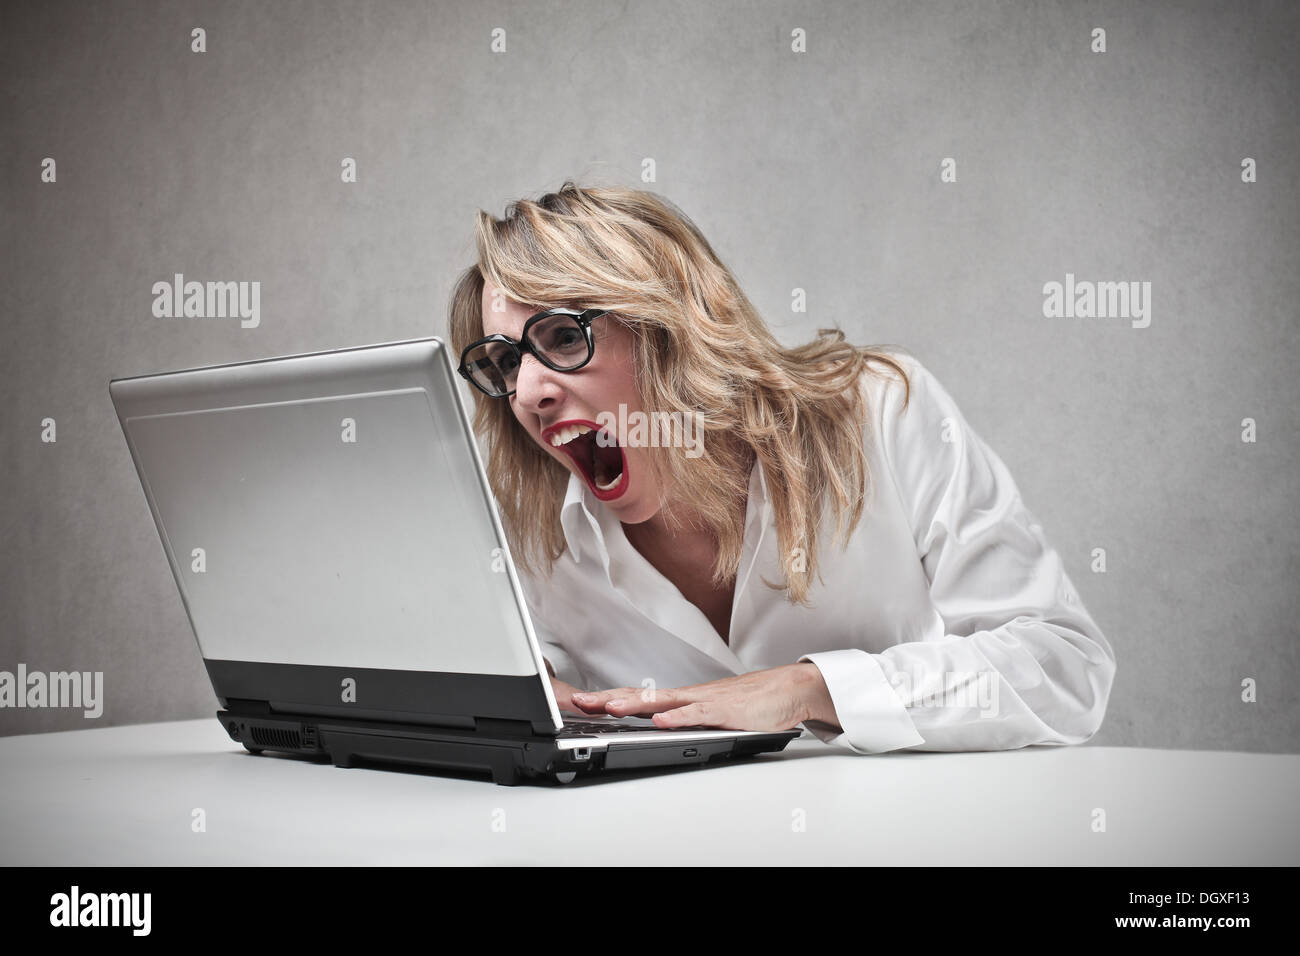 Böse blonde Frau schreiend gegen einen laptop Stockfoto